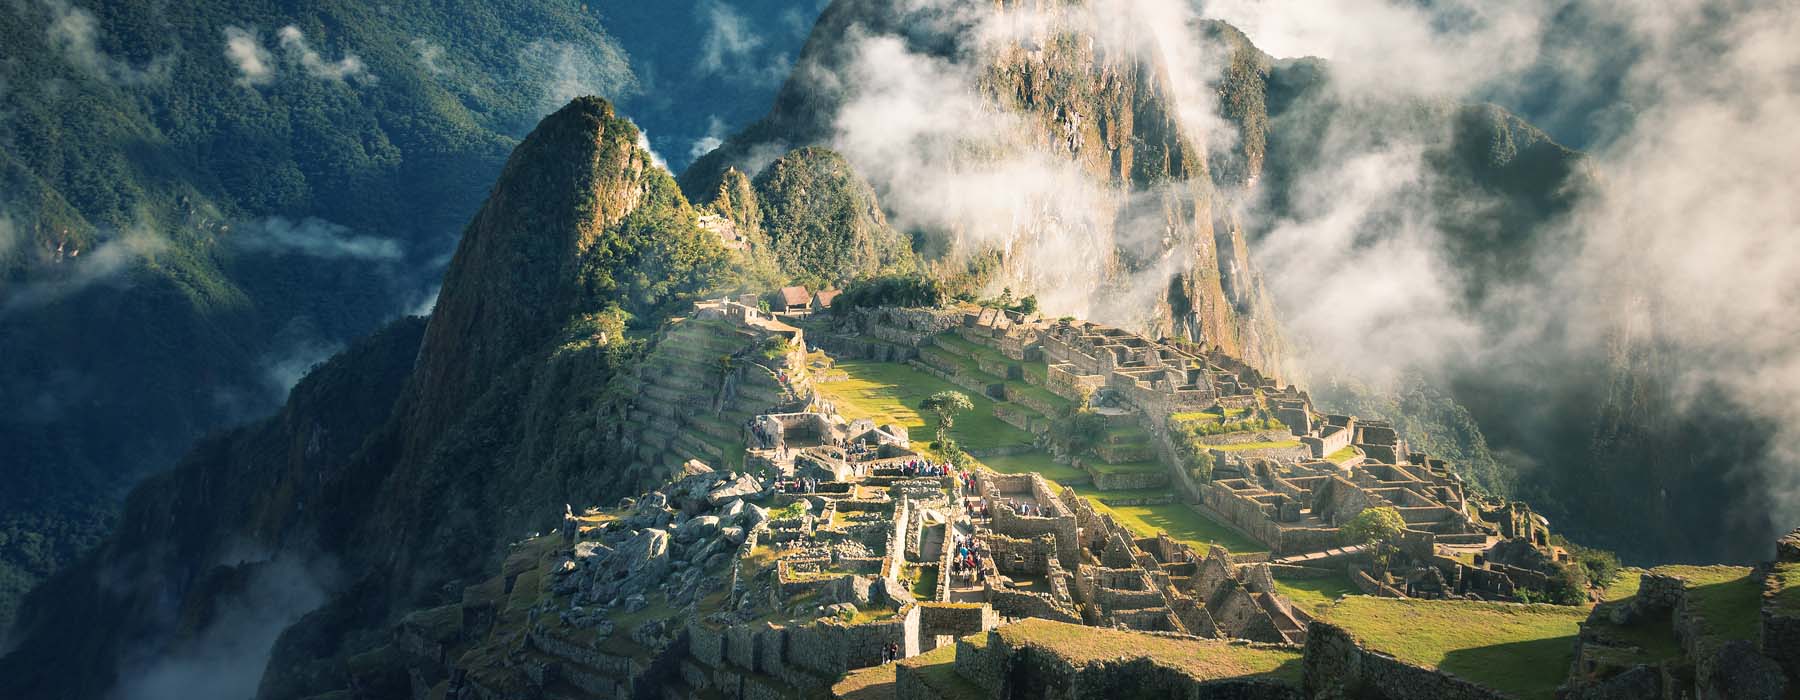 All our Peru Itinerary<br class="hidden-md hidden-lg" /> holidays